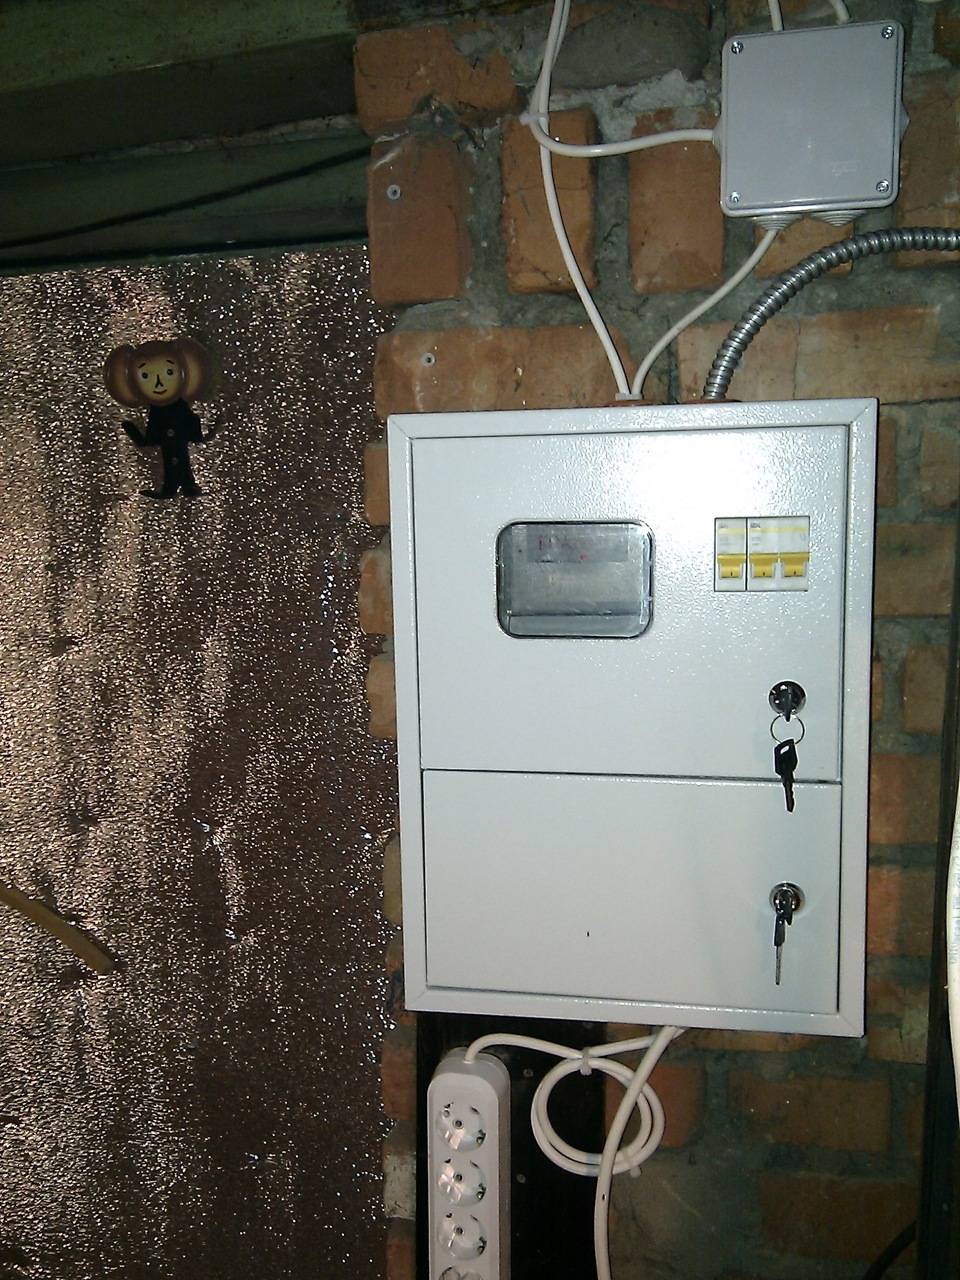 Электропроводка в гараже: схема, фото, пошаговая инструкция